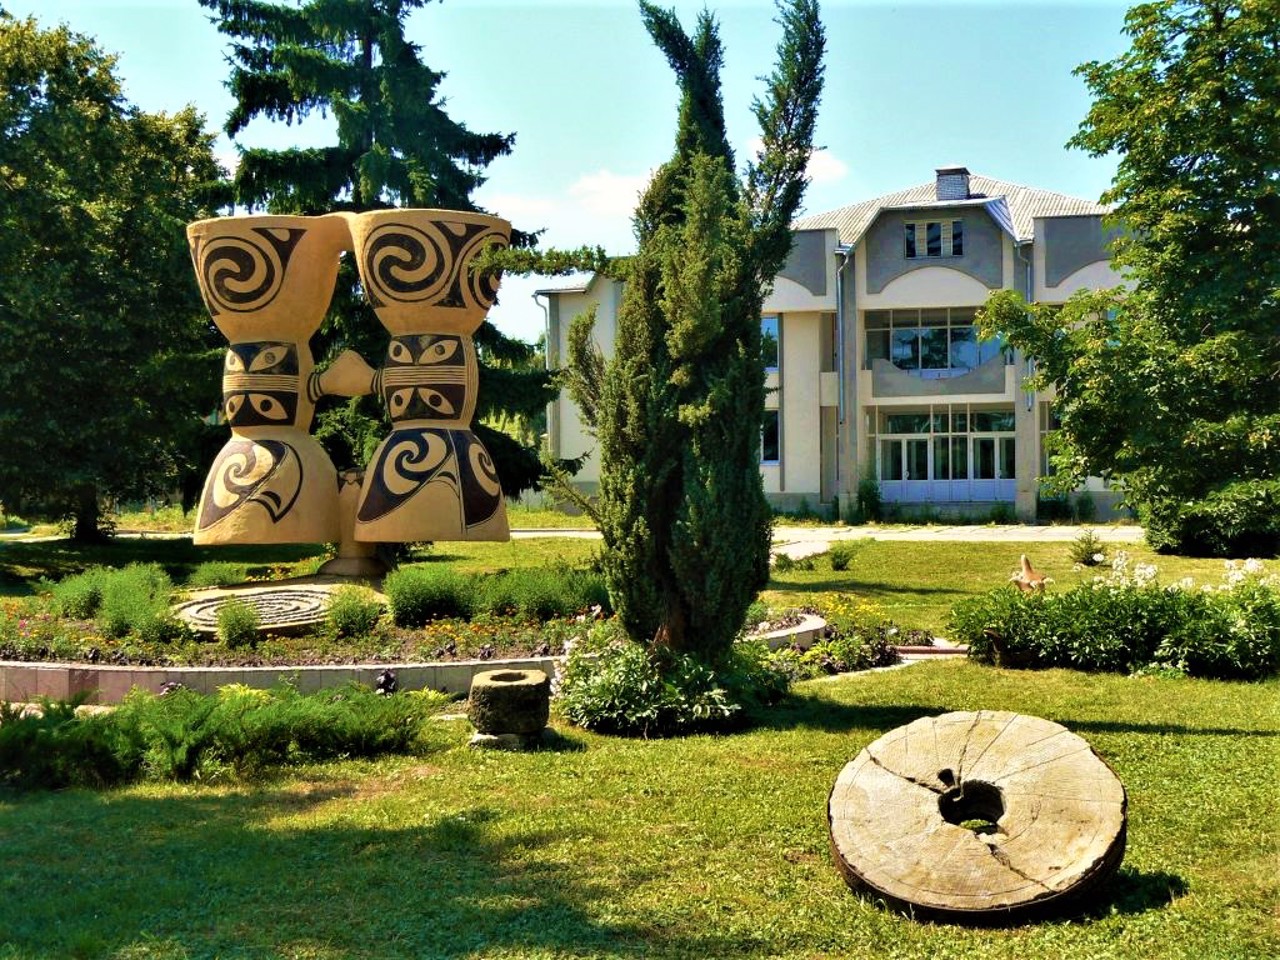 Trypillya Culture Park, Rzhyshchiv